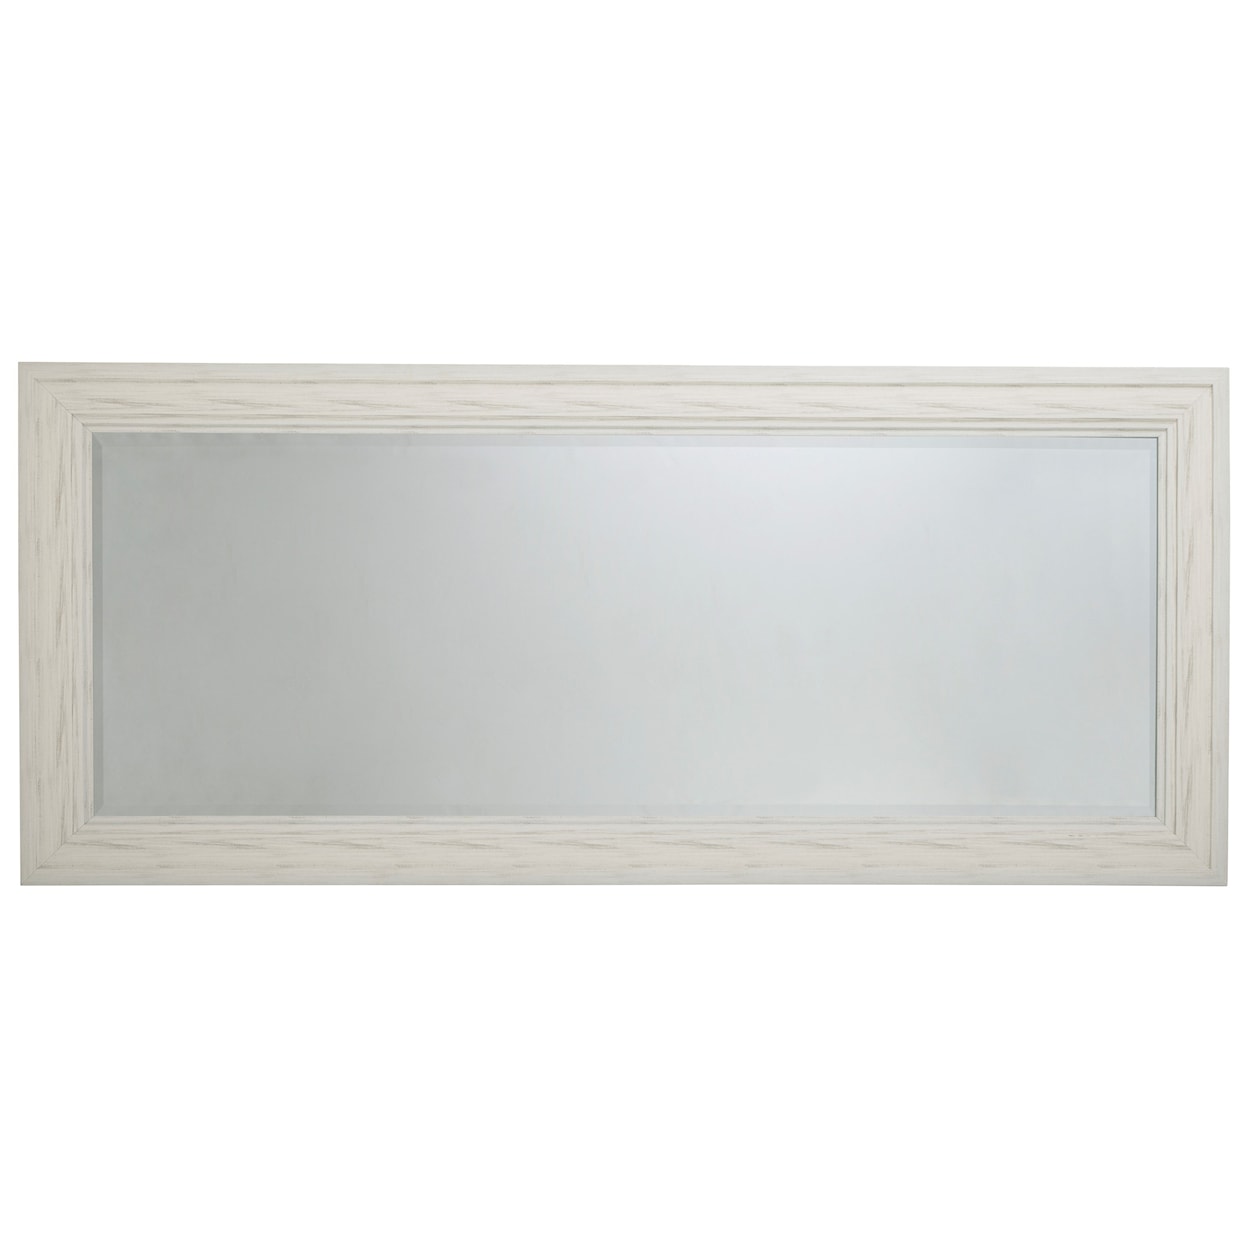 Ashley Signature Design Accent Mirrors Jacee Antique White Floor Mirror